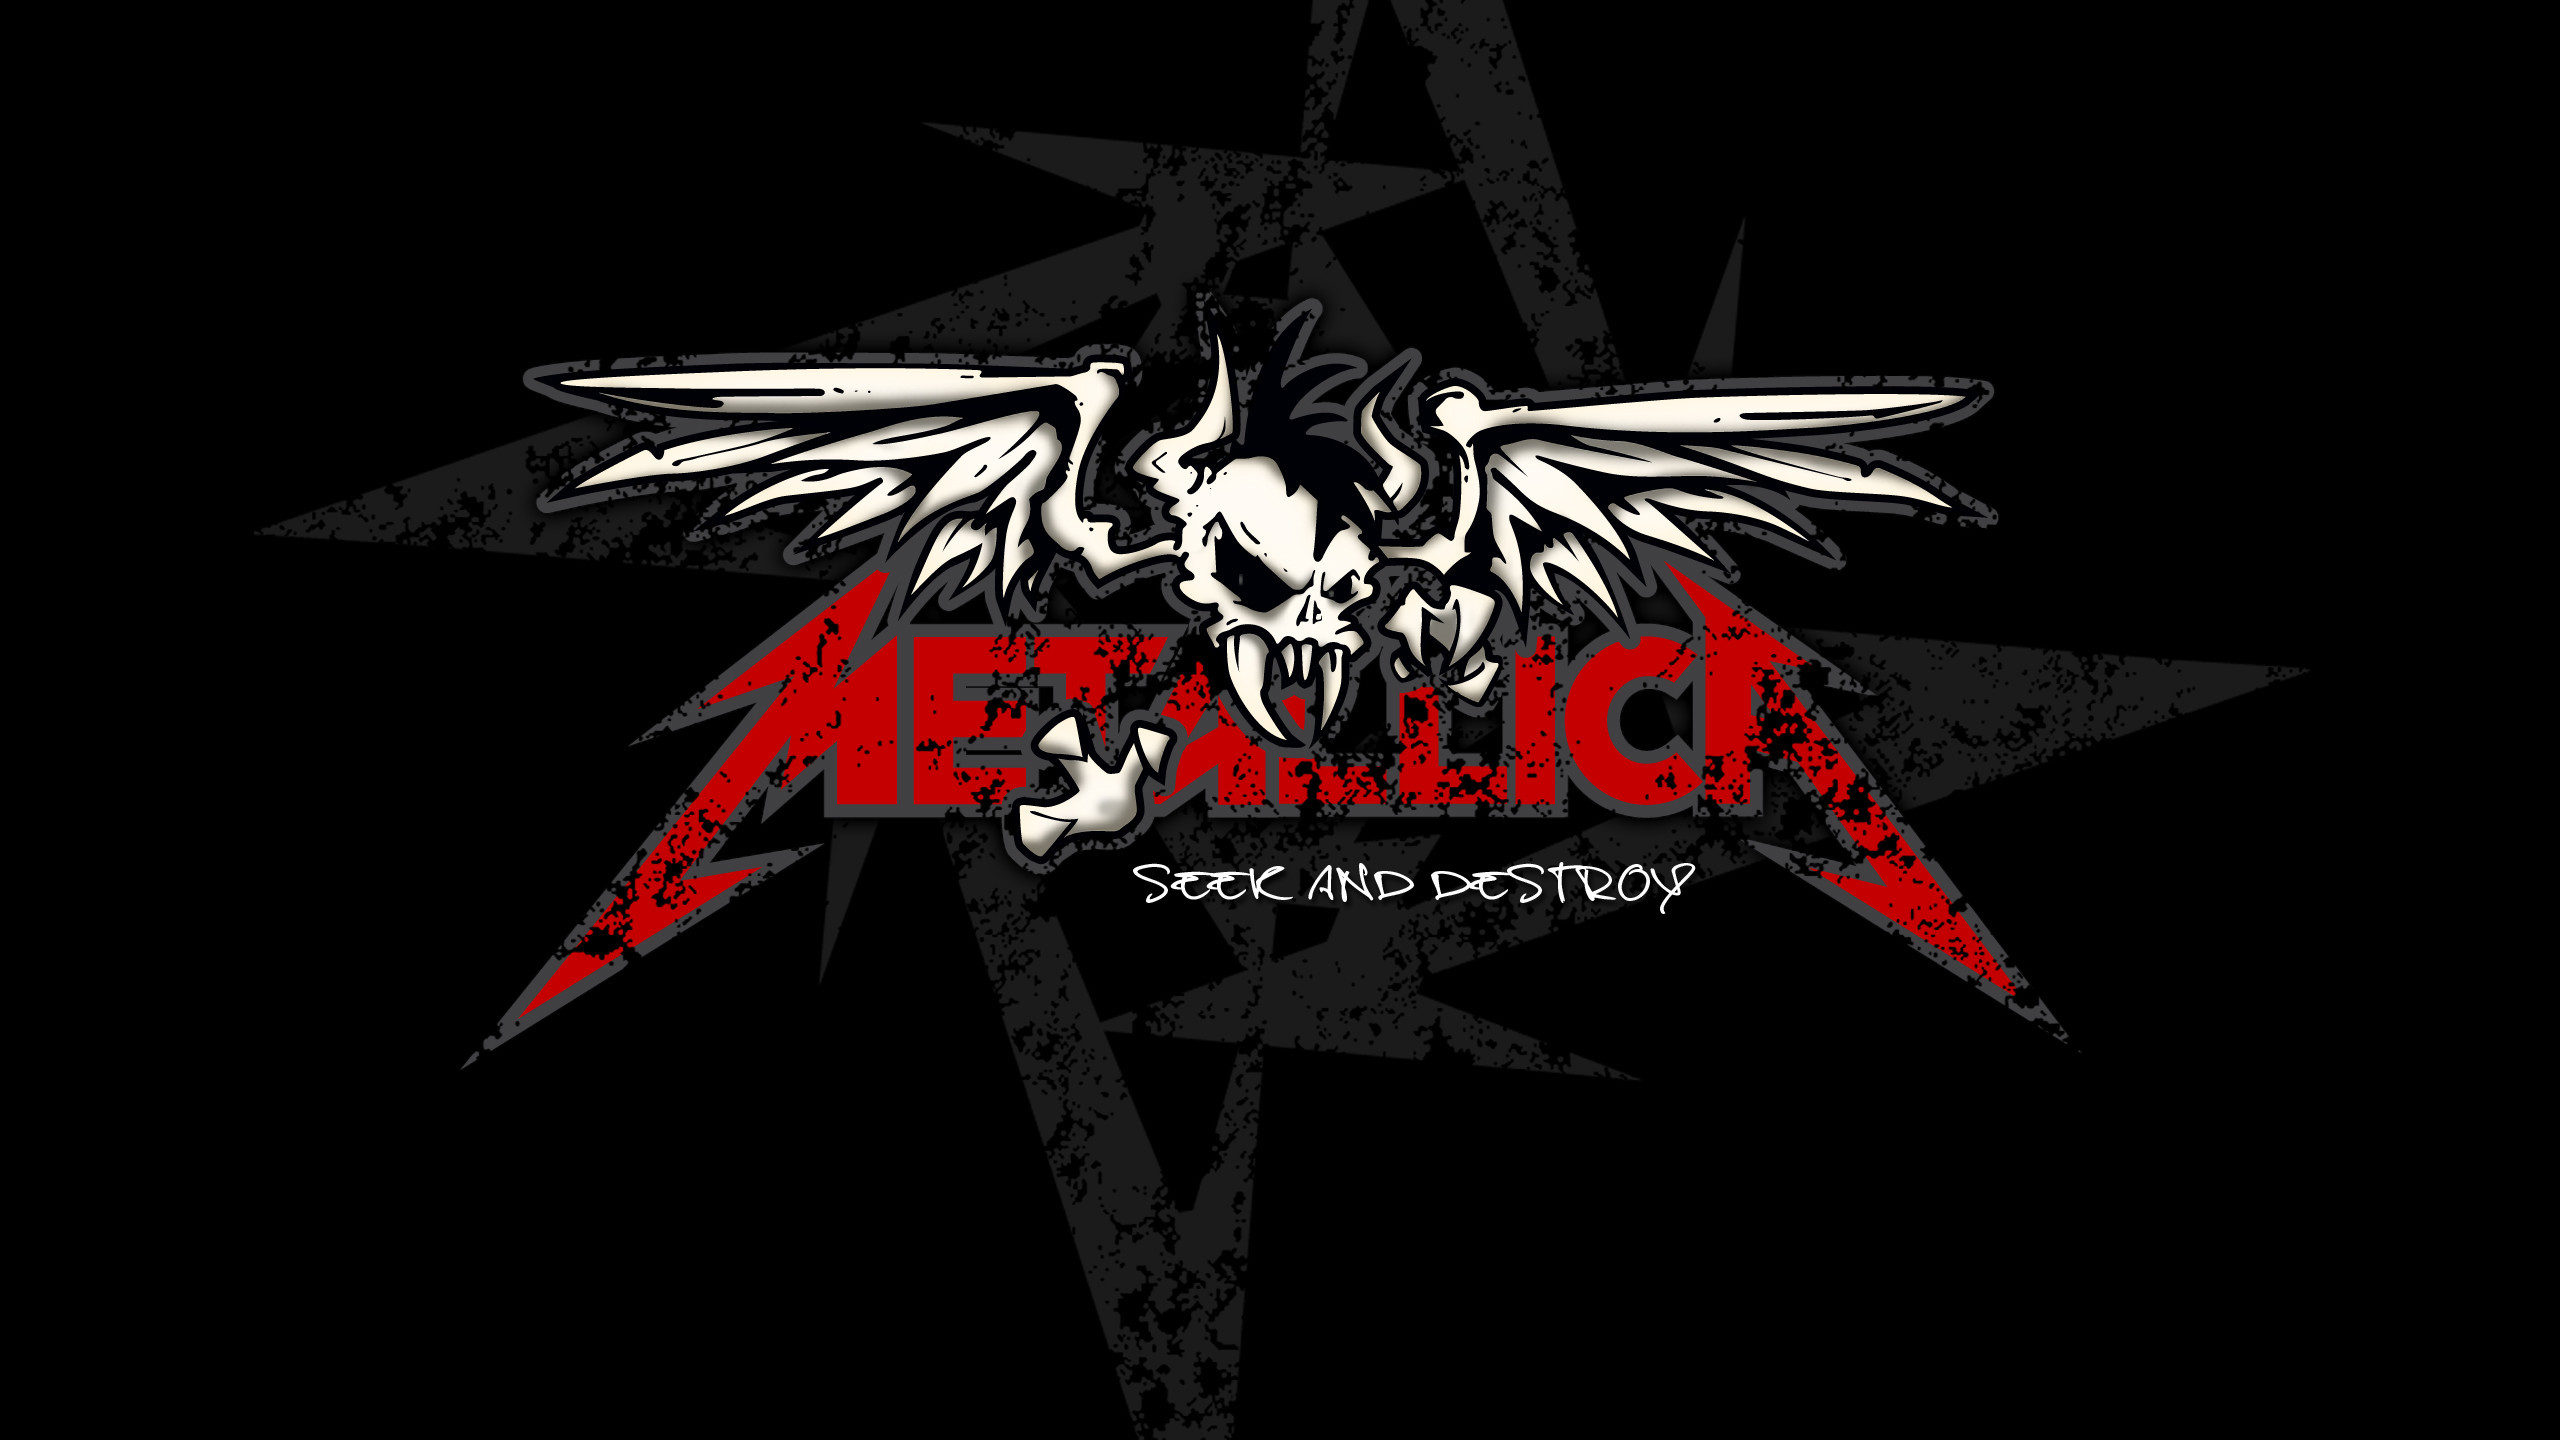 Metallica Logo Wallpapers  PixelsTalkNet